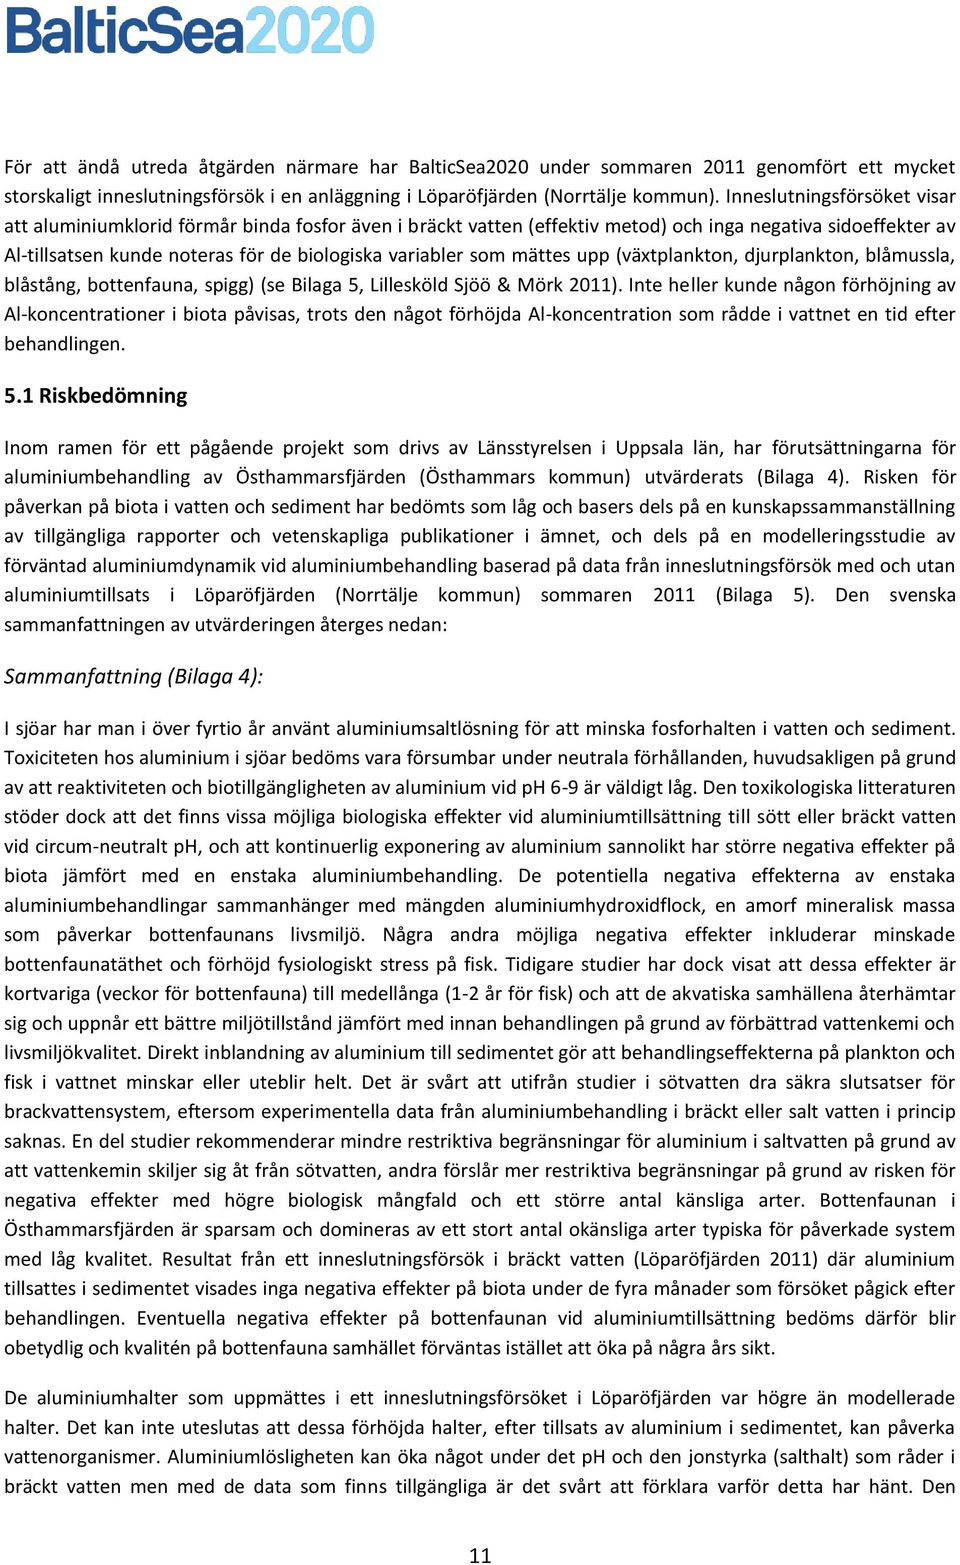 mättes upp (växtplankton, djurplankton, blåmussla, blåstång, bottenfauna, spigg) (se Bilaga 5, Lillesköld Sjöö & Mörk 2011).